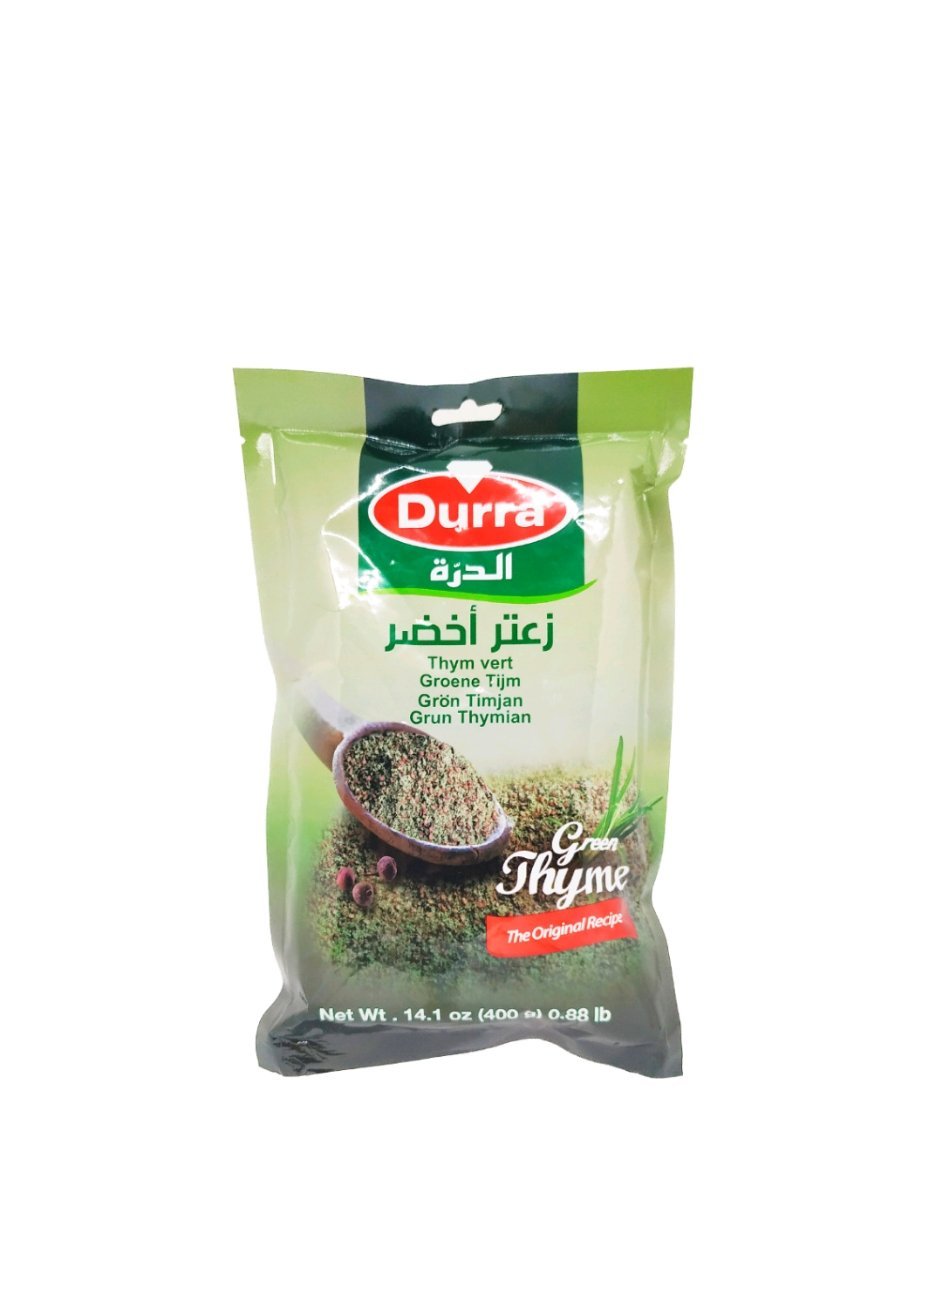 Produits orientaux en ligne : Durra - Thym vert